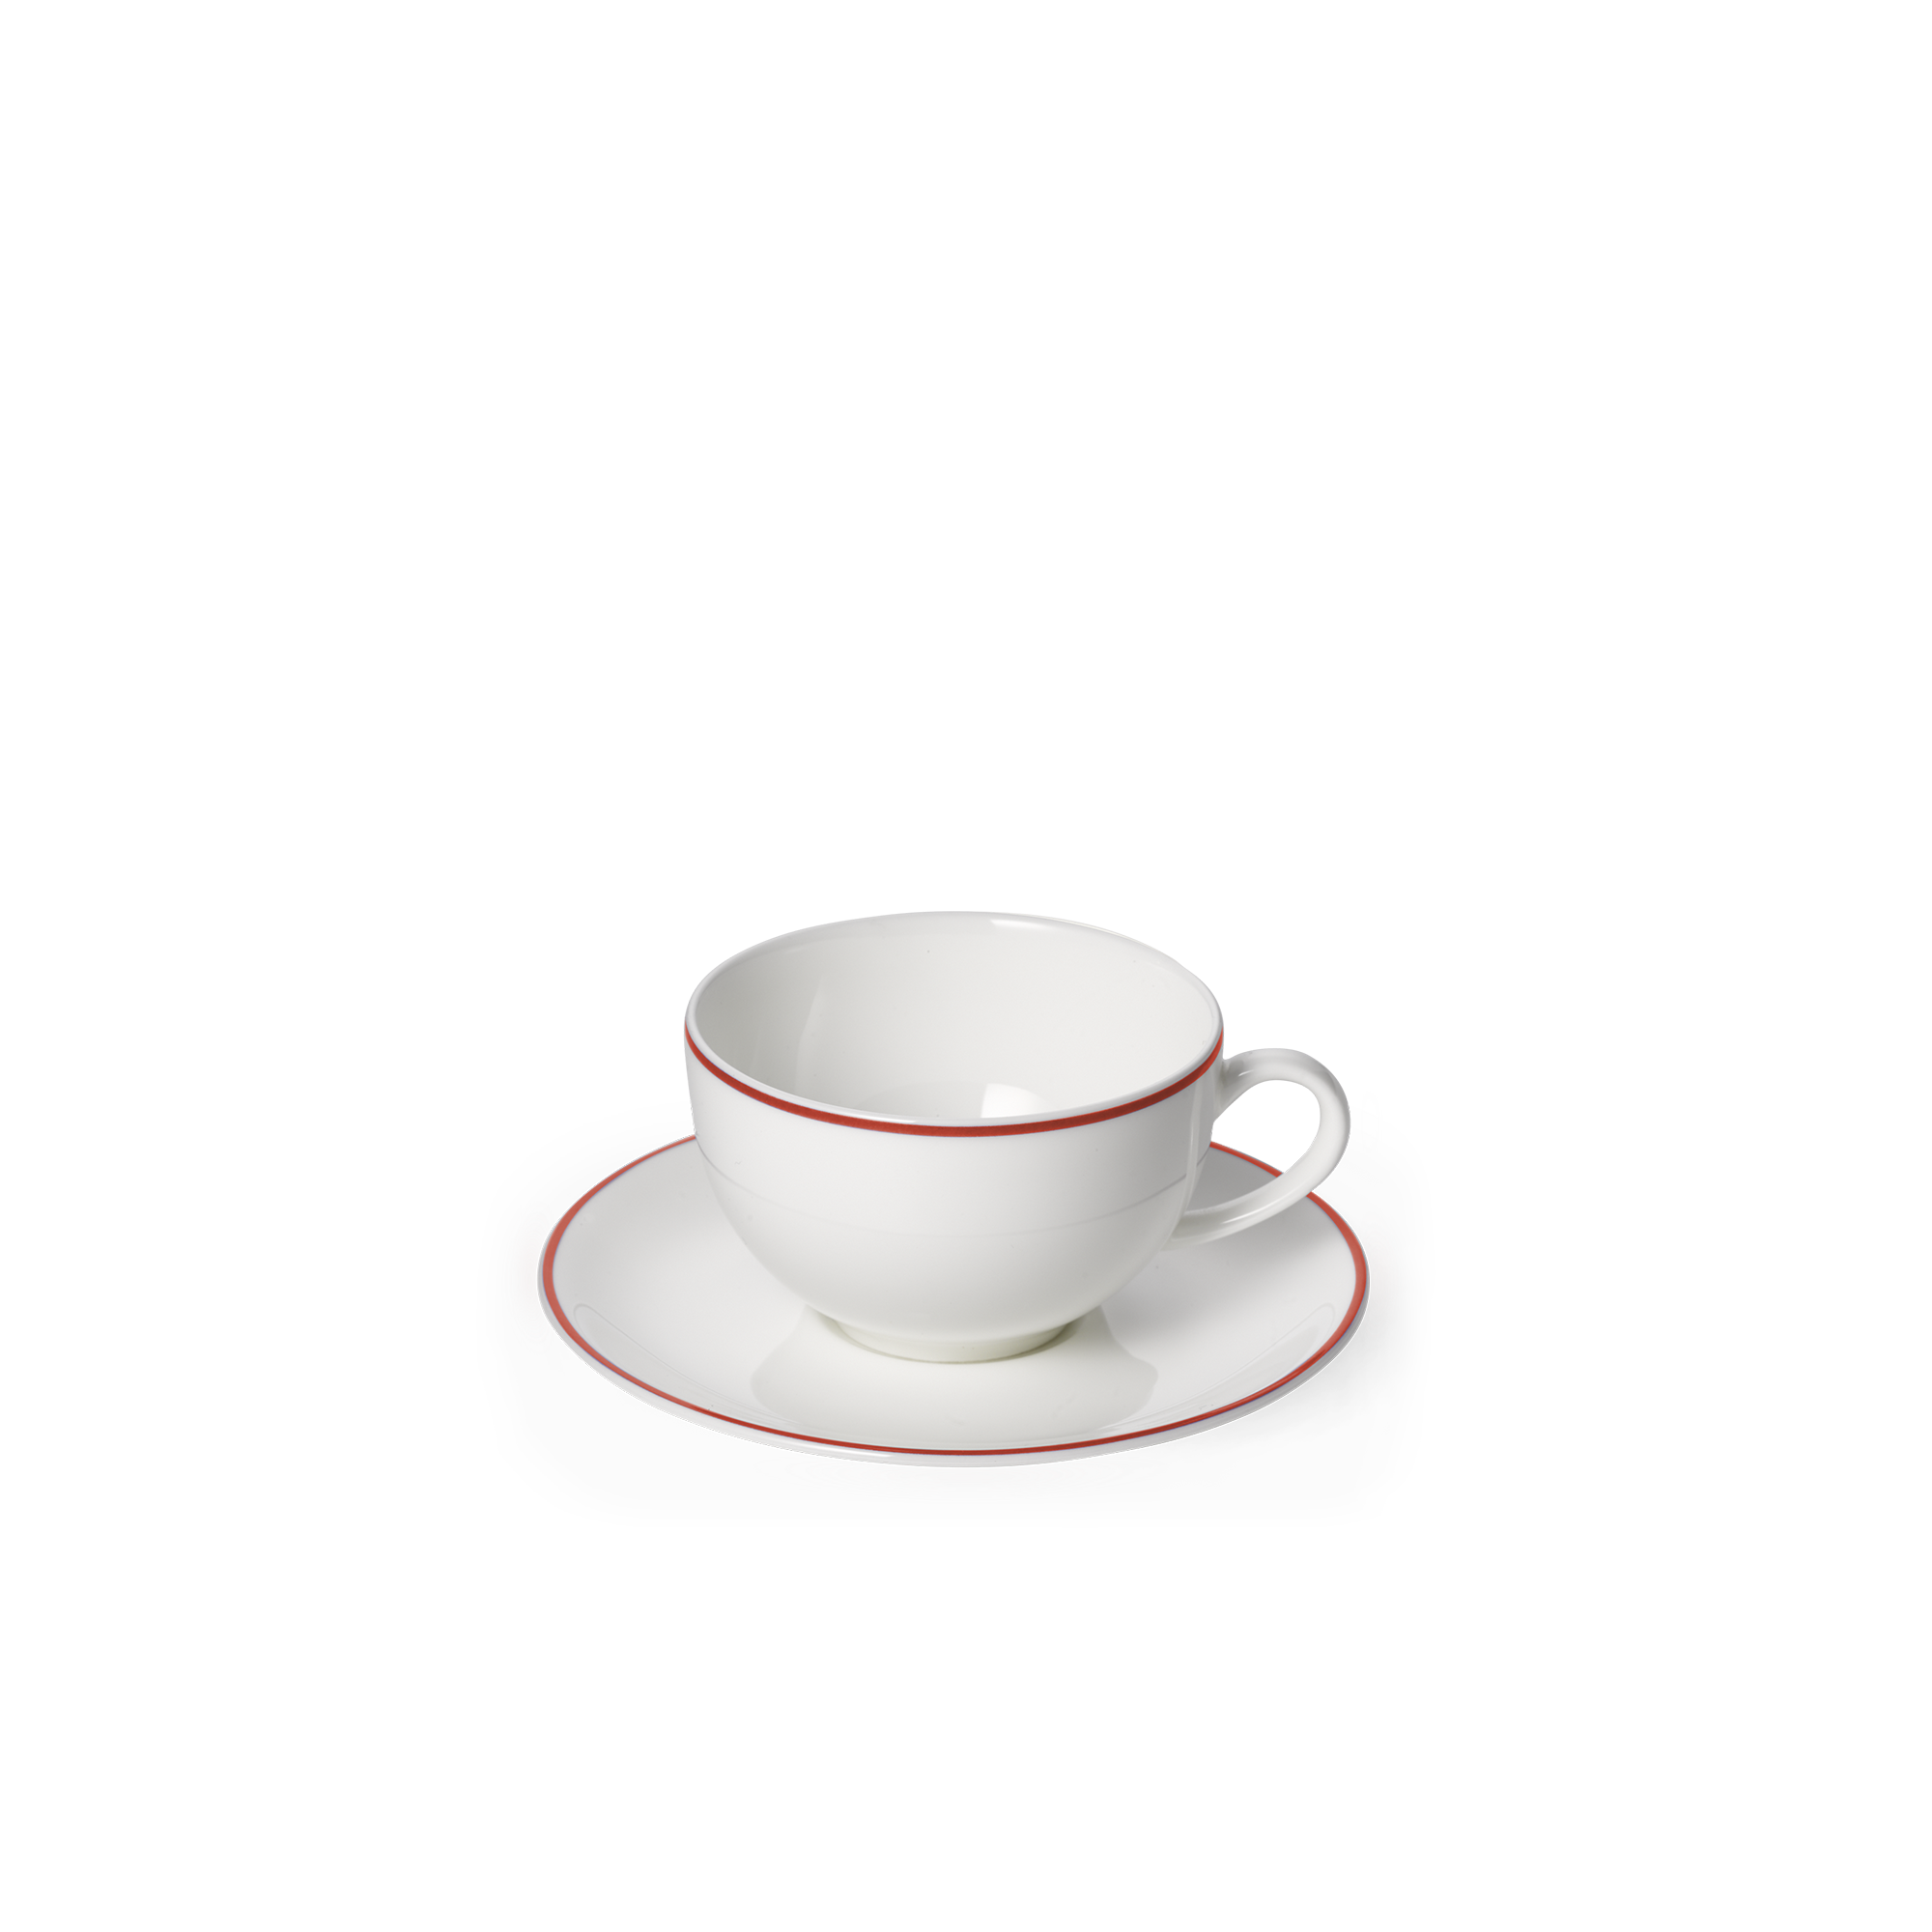 Simplicity espresso cup red